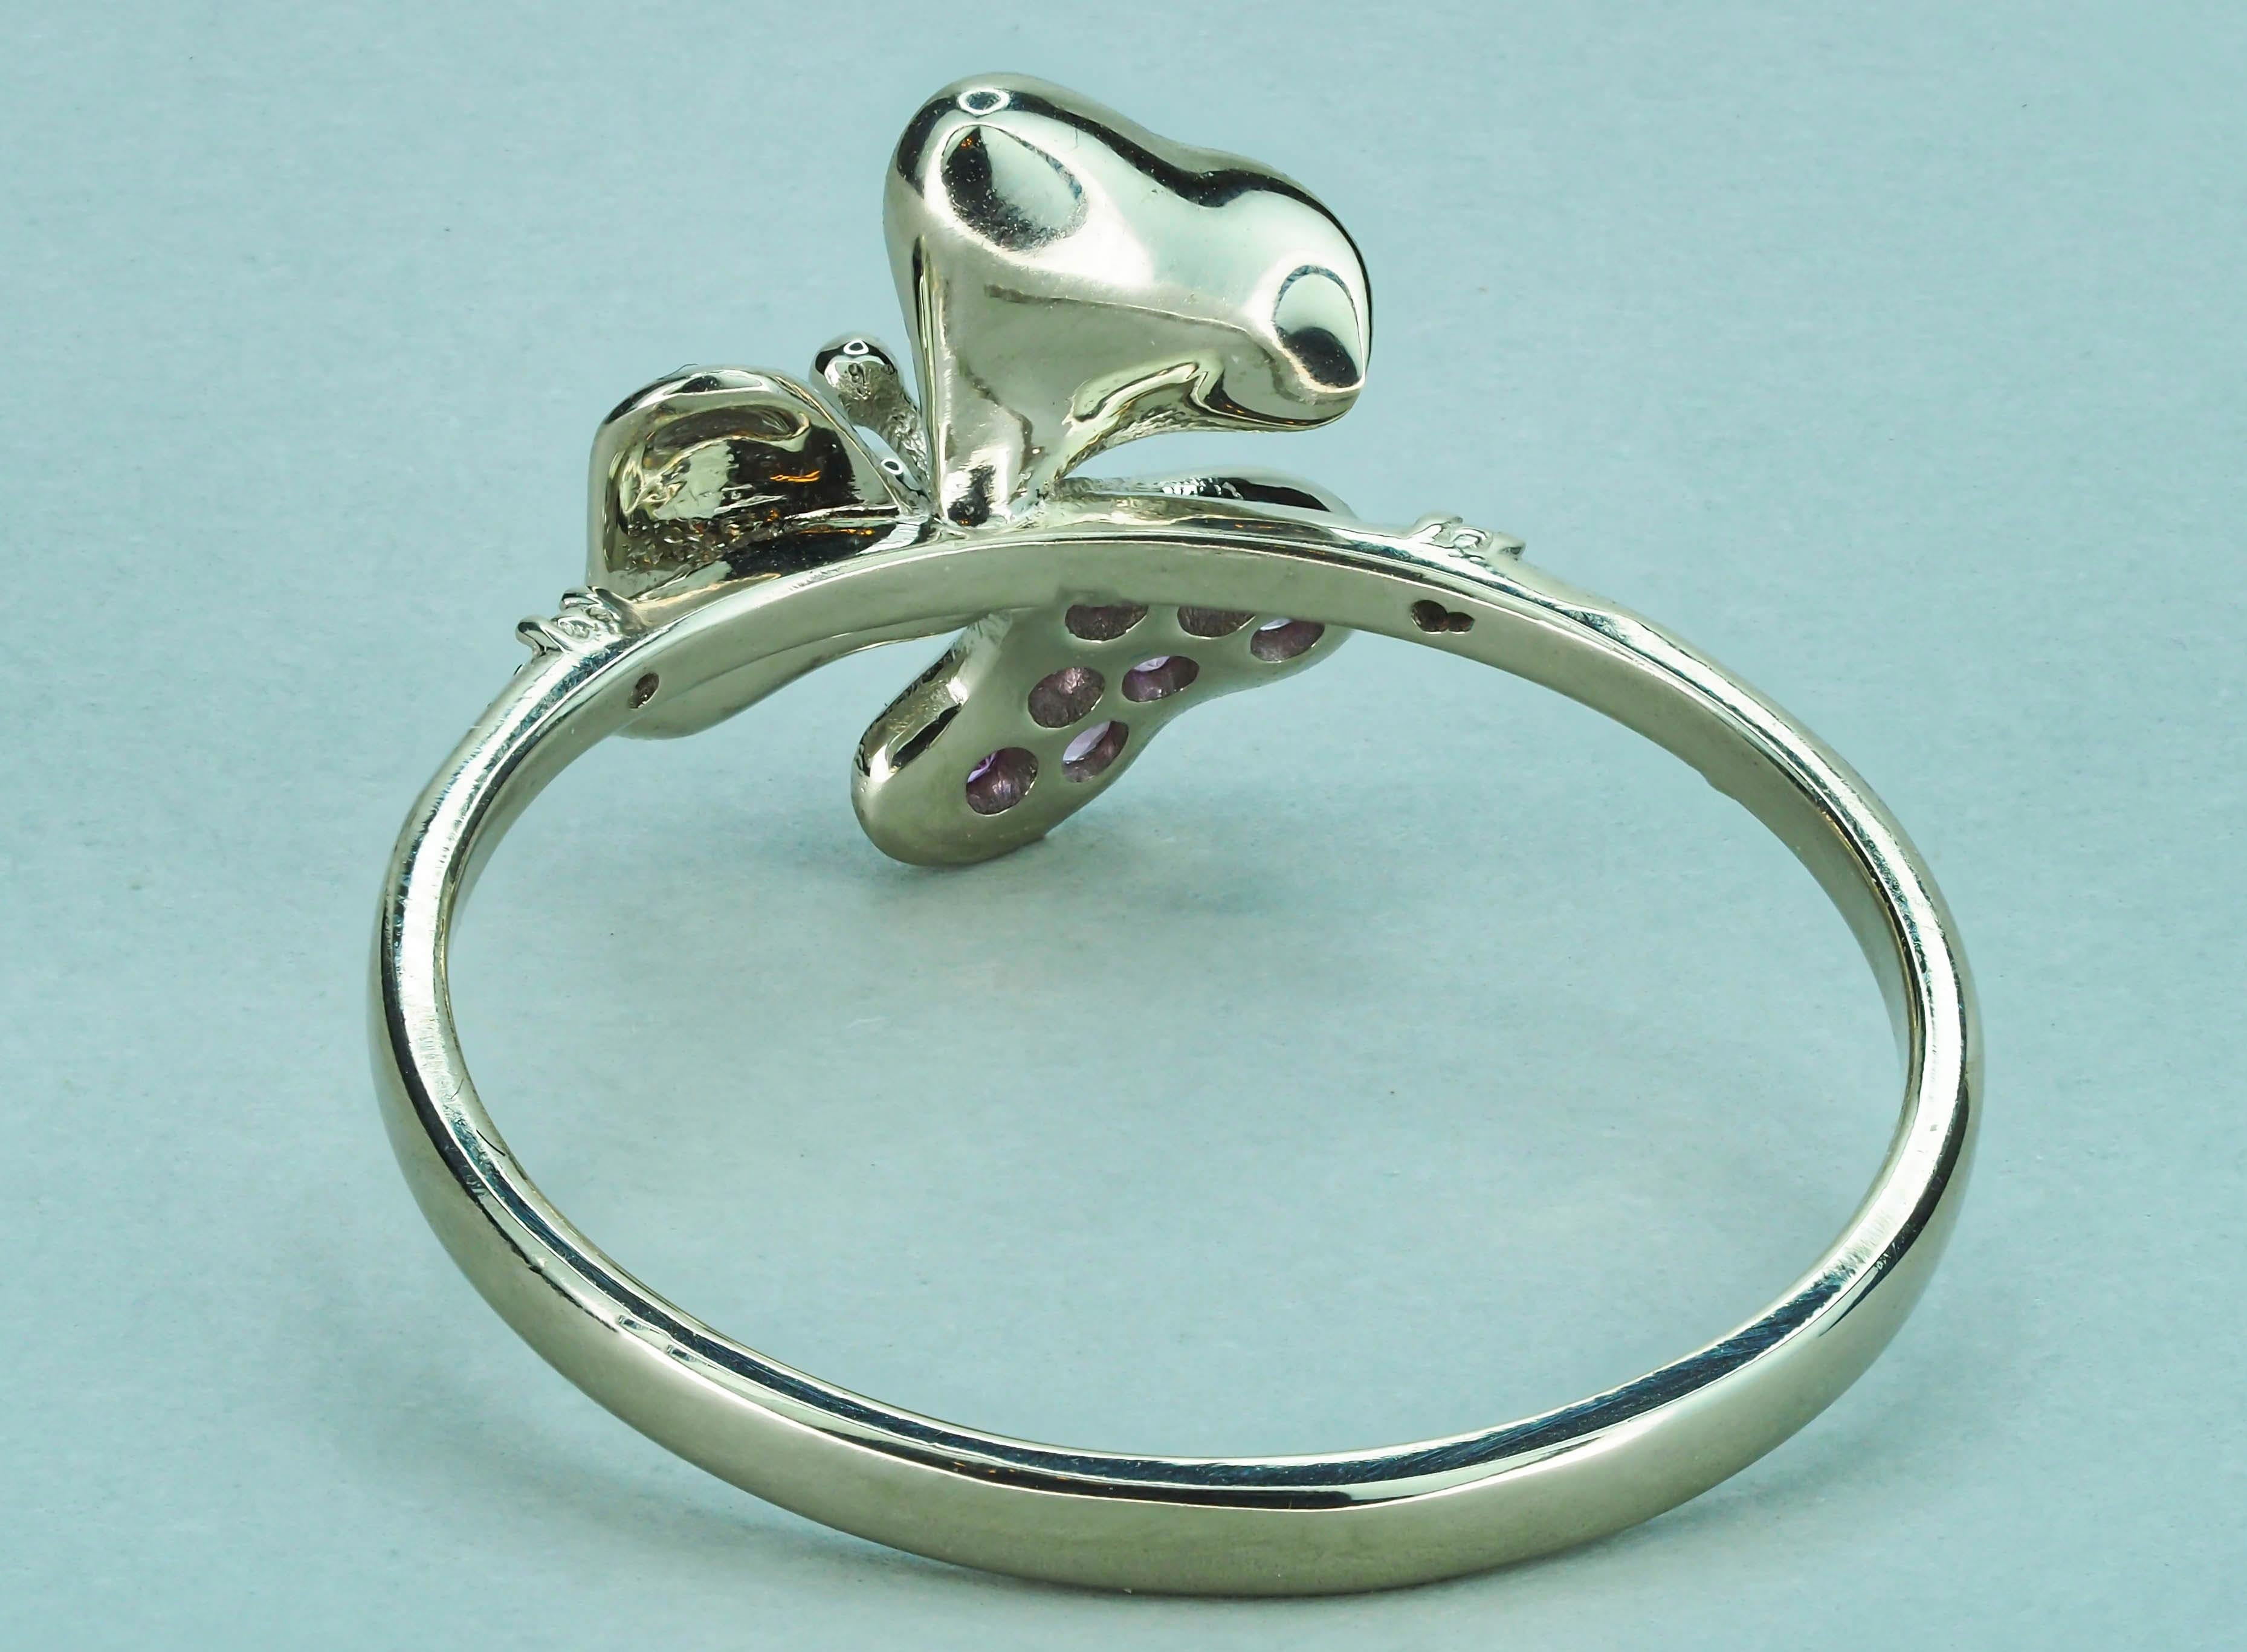 For Sale:  3 petal Flower 14k ring with gemstones. 5